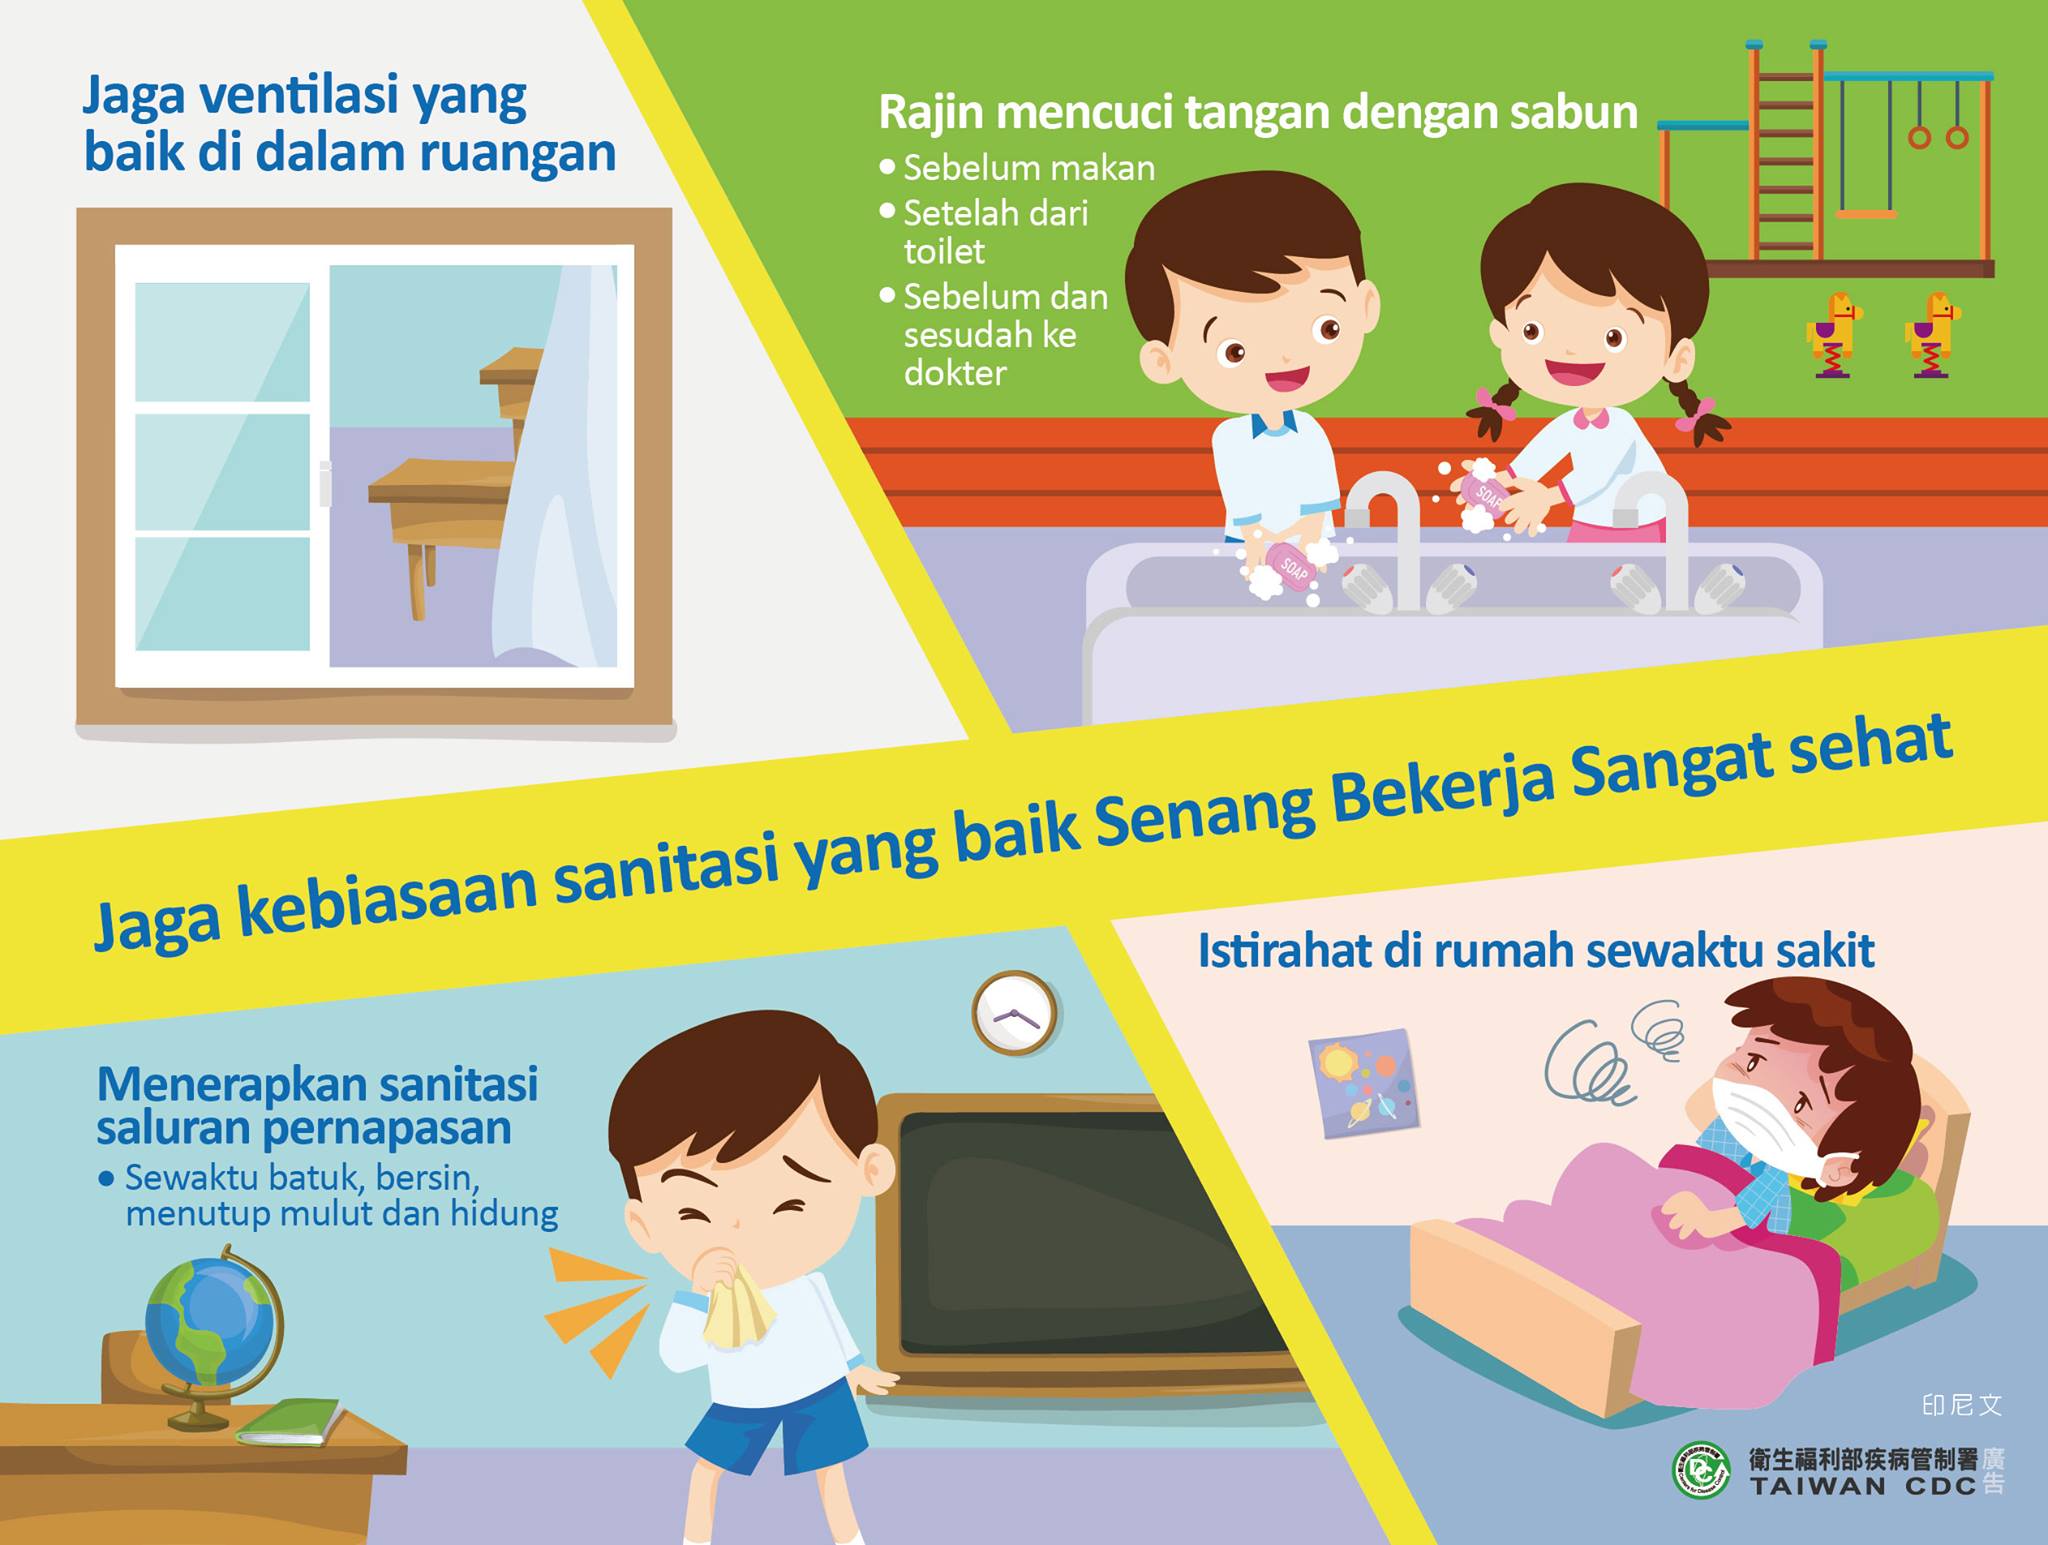 衛生福利部宣導保持衛生好習慣好防疫-印尼文